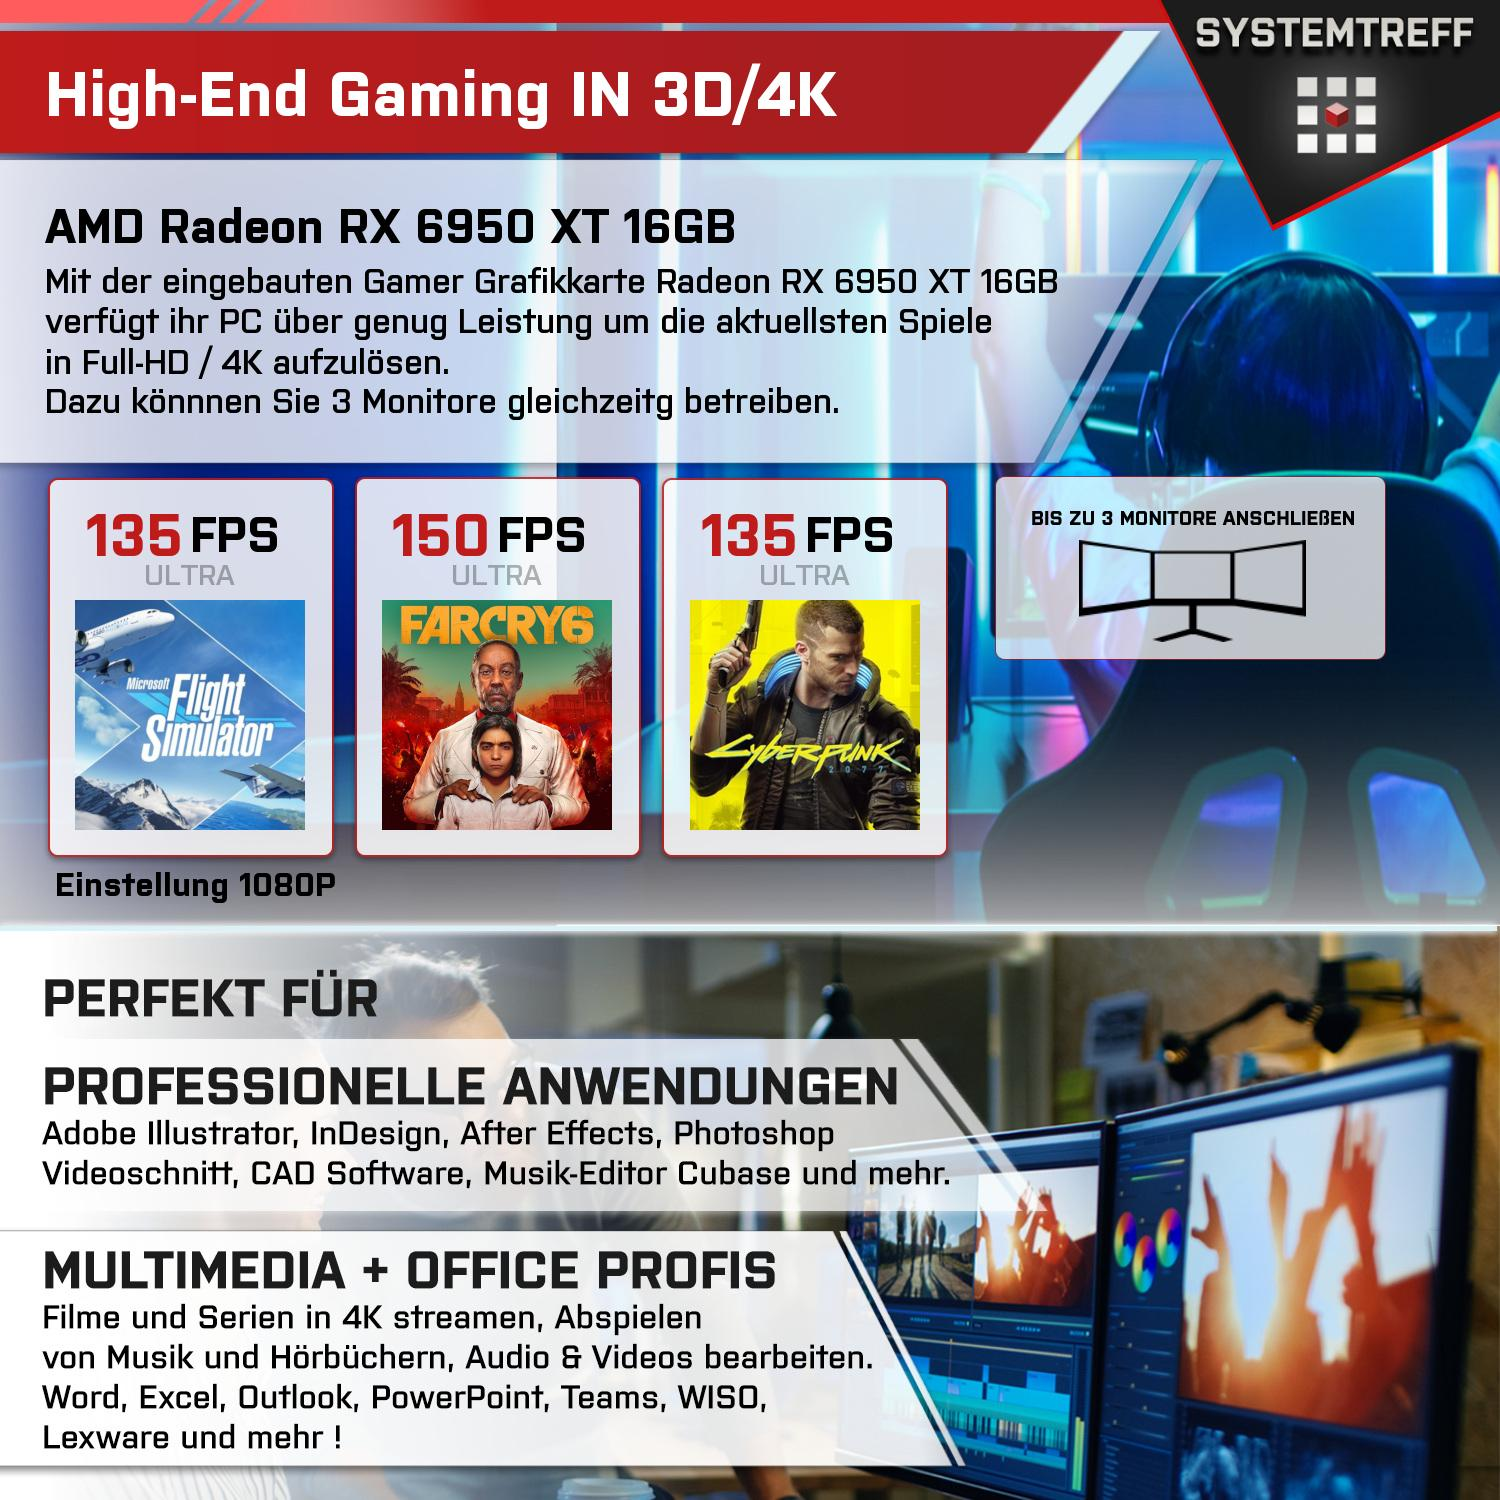 SYSTEMTREFF Gaming Komplett XT 1000 RX AMD Radeon i7-13700K, Komplett RAM, mit mSSD, GDDR6, 32 GB Intel i7-13700K Core 6950 16GB GB 16 PC Prozessor, GB